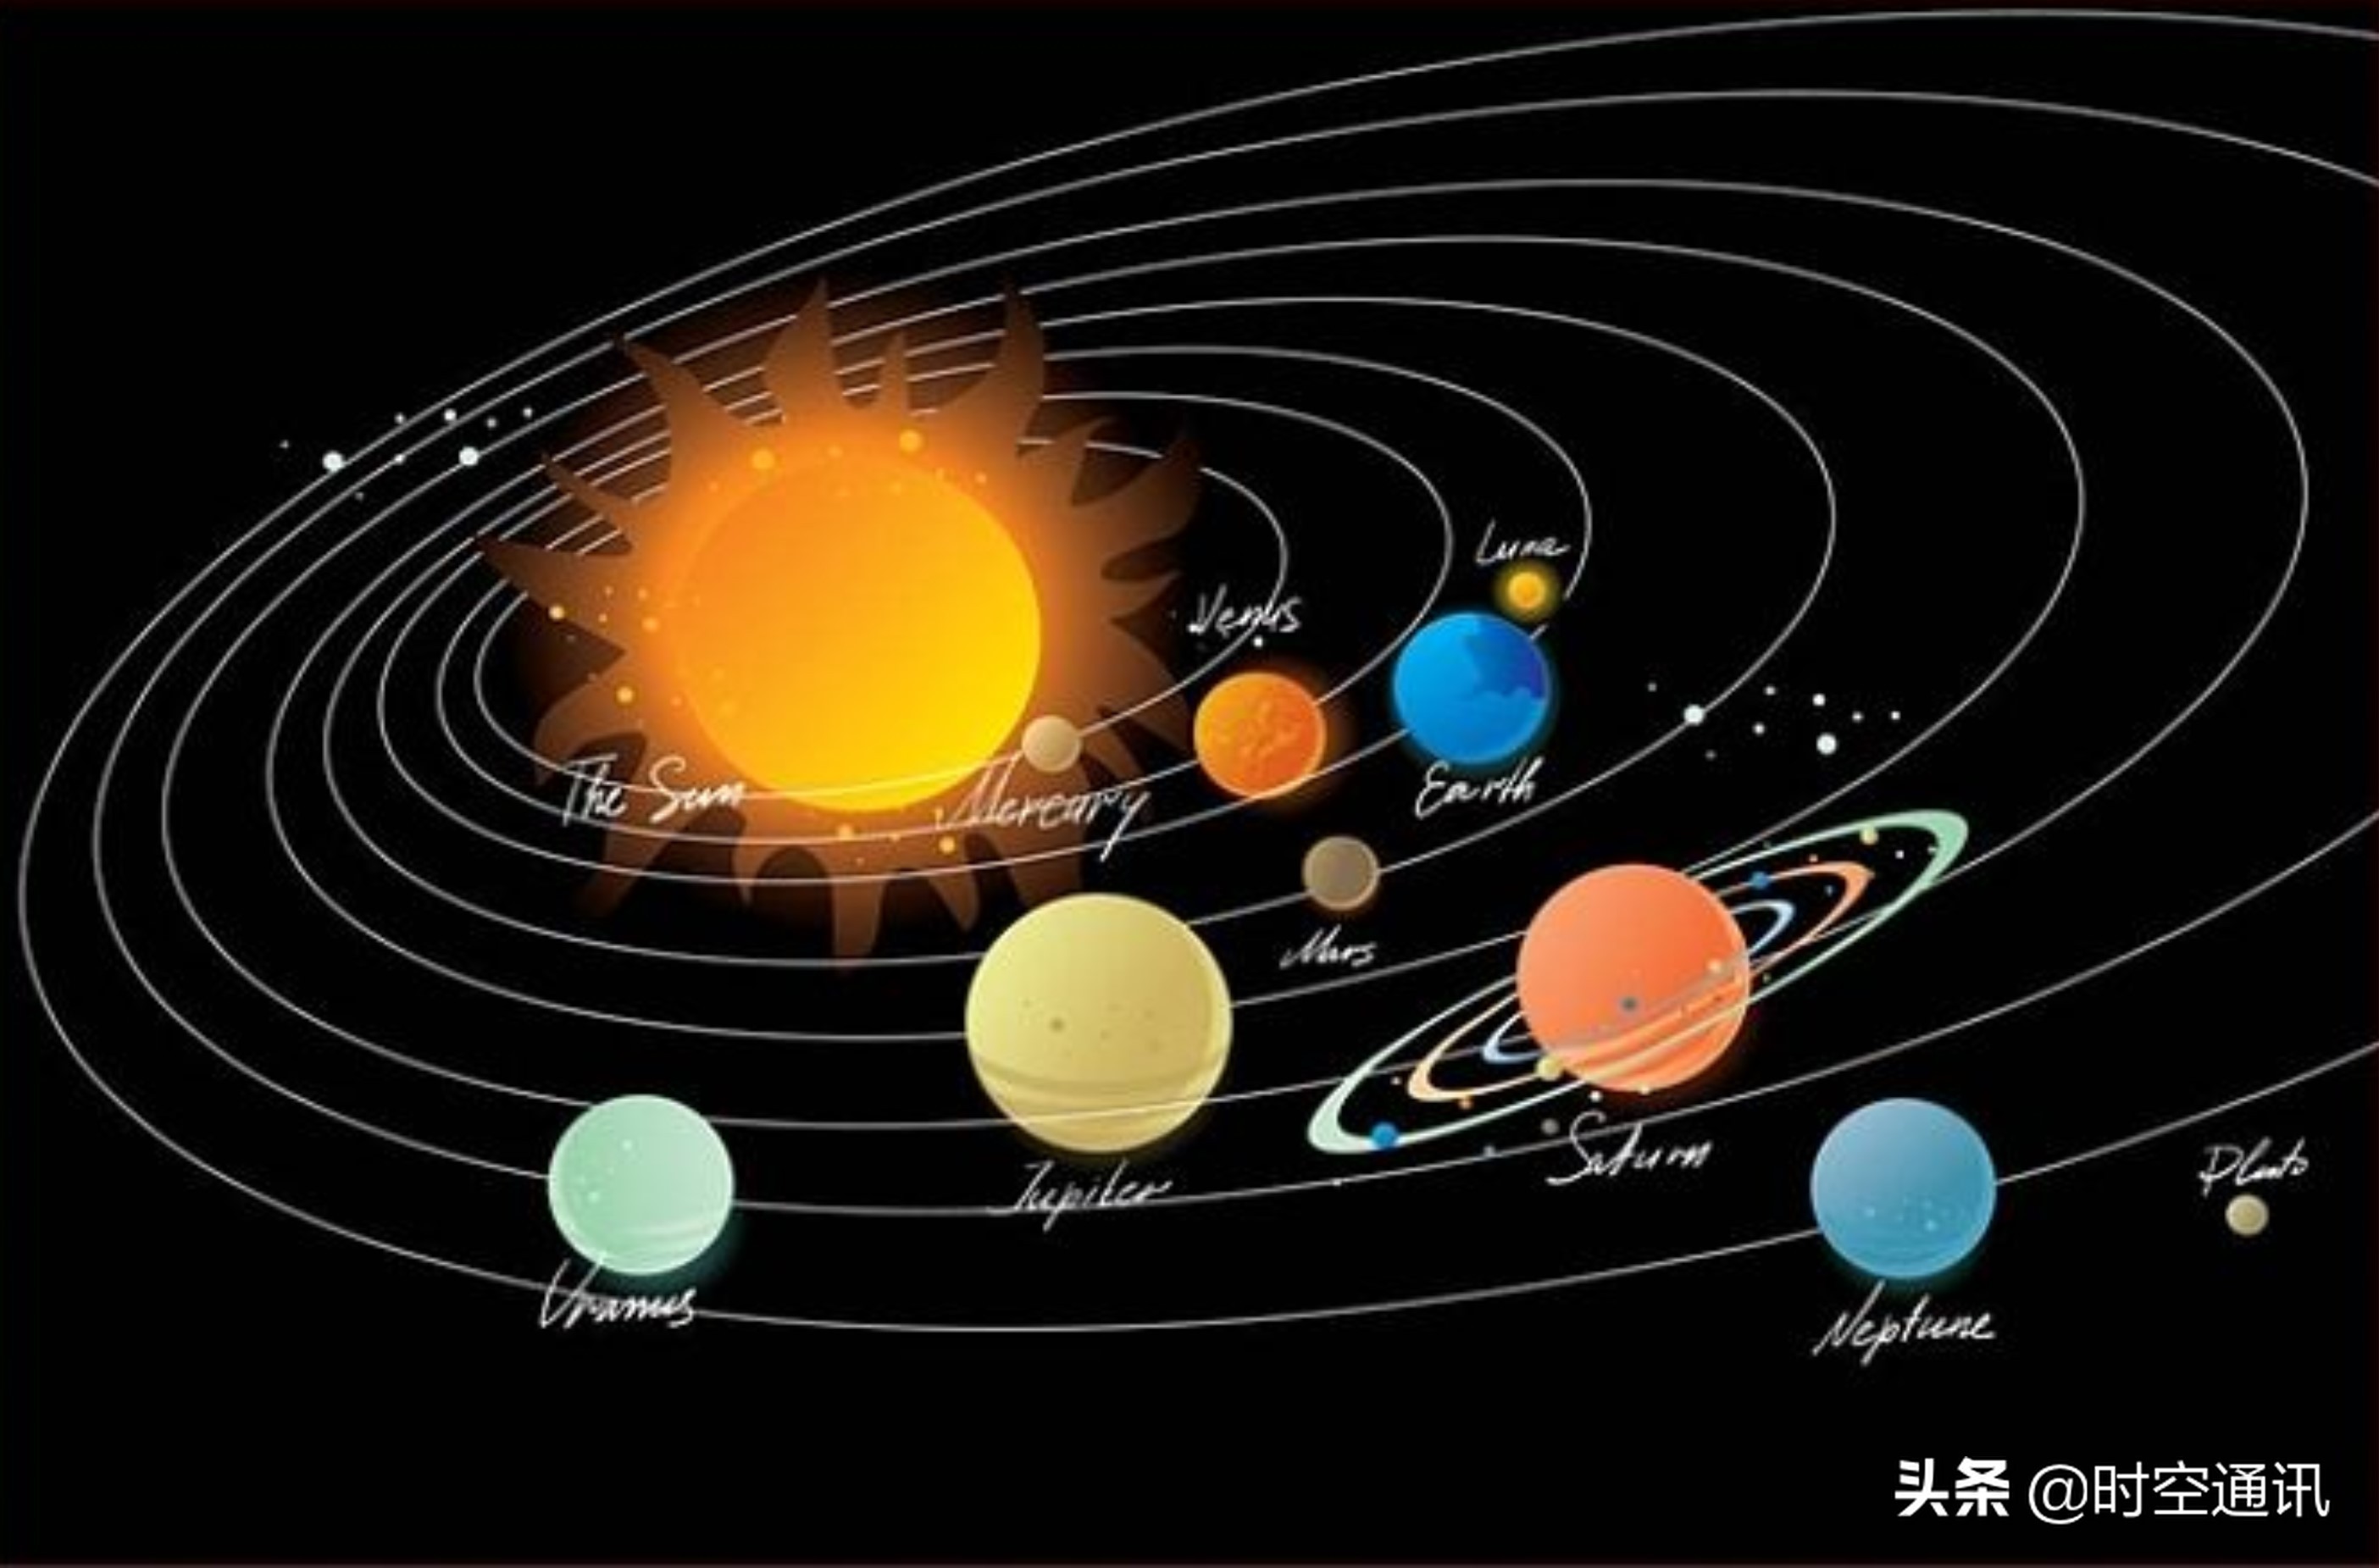 以太阳为中心,从近到远,太阳系的其他七大行星的轨道自转公转周期如下